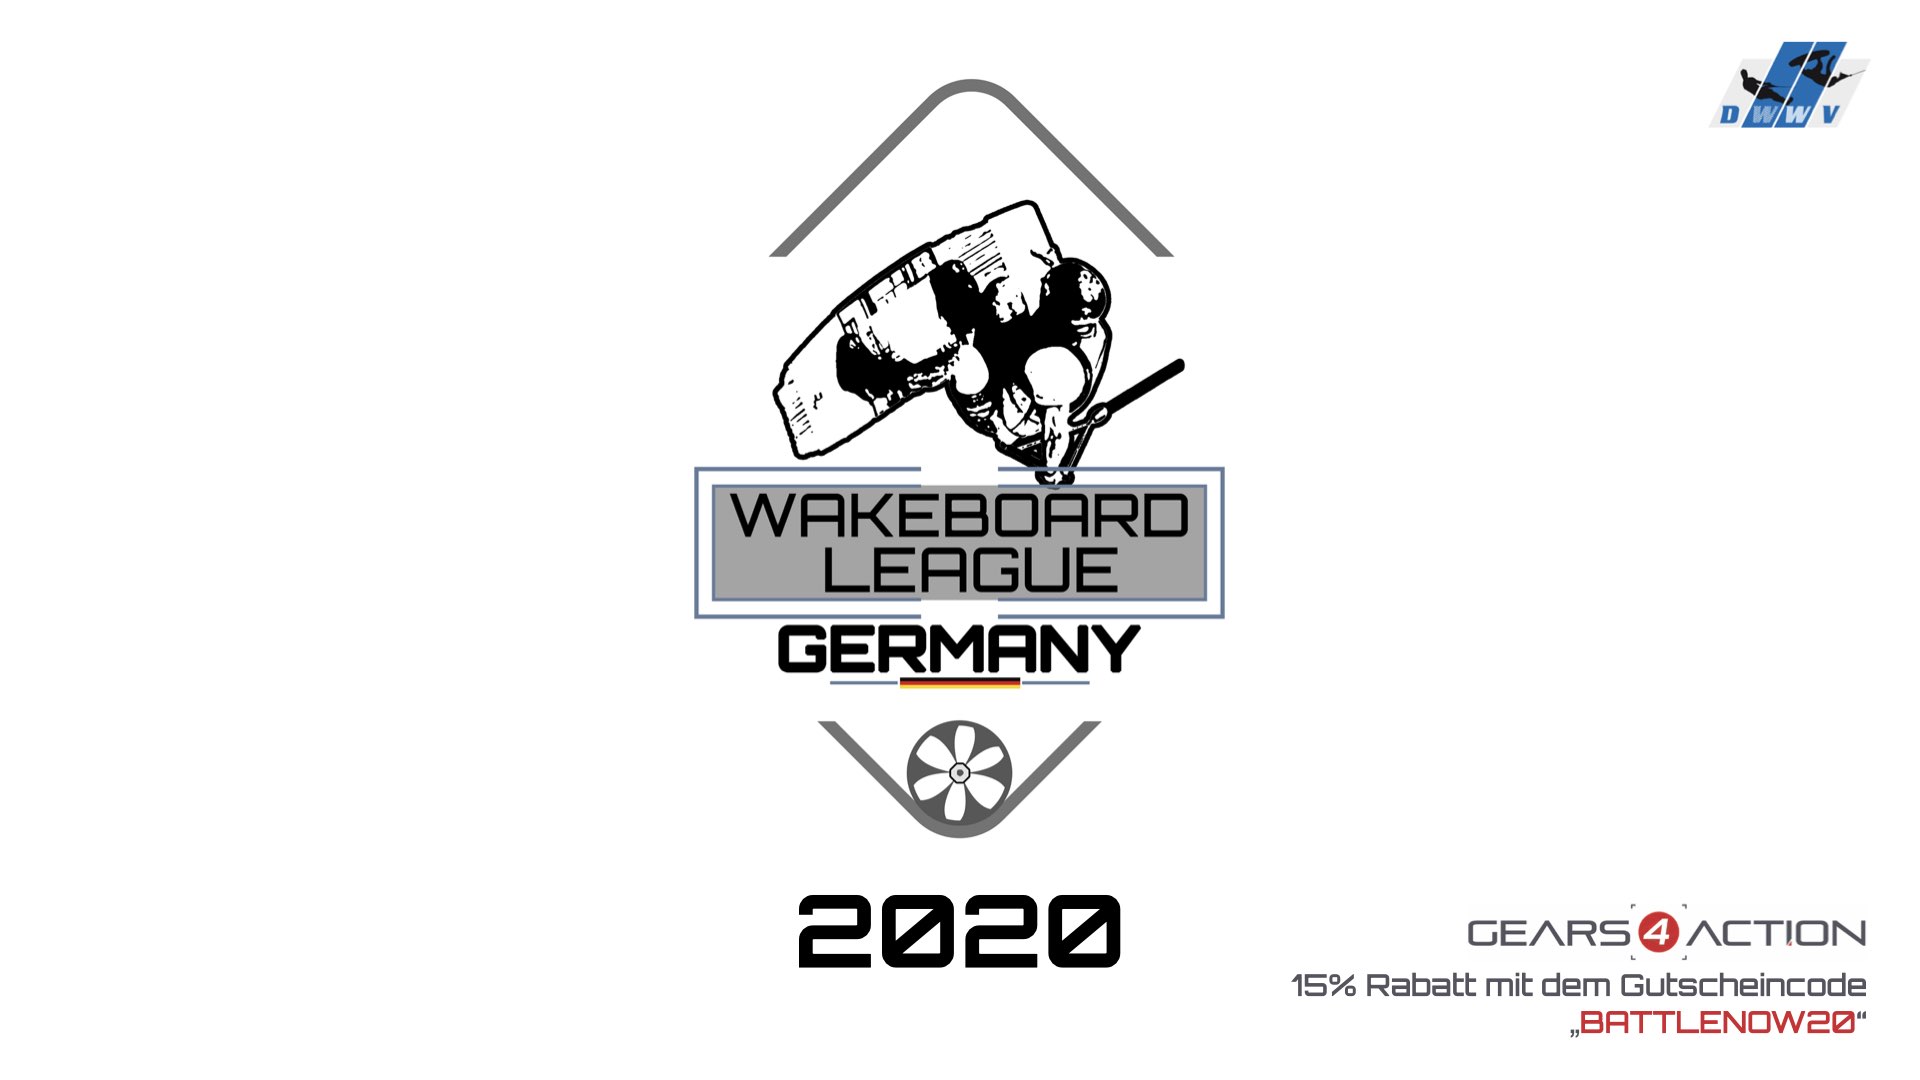 DWWV Wakeboard League Germany - Battle 4 - Best Transfer/Gap